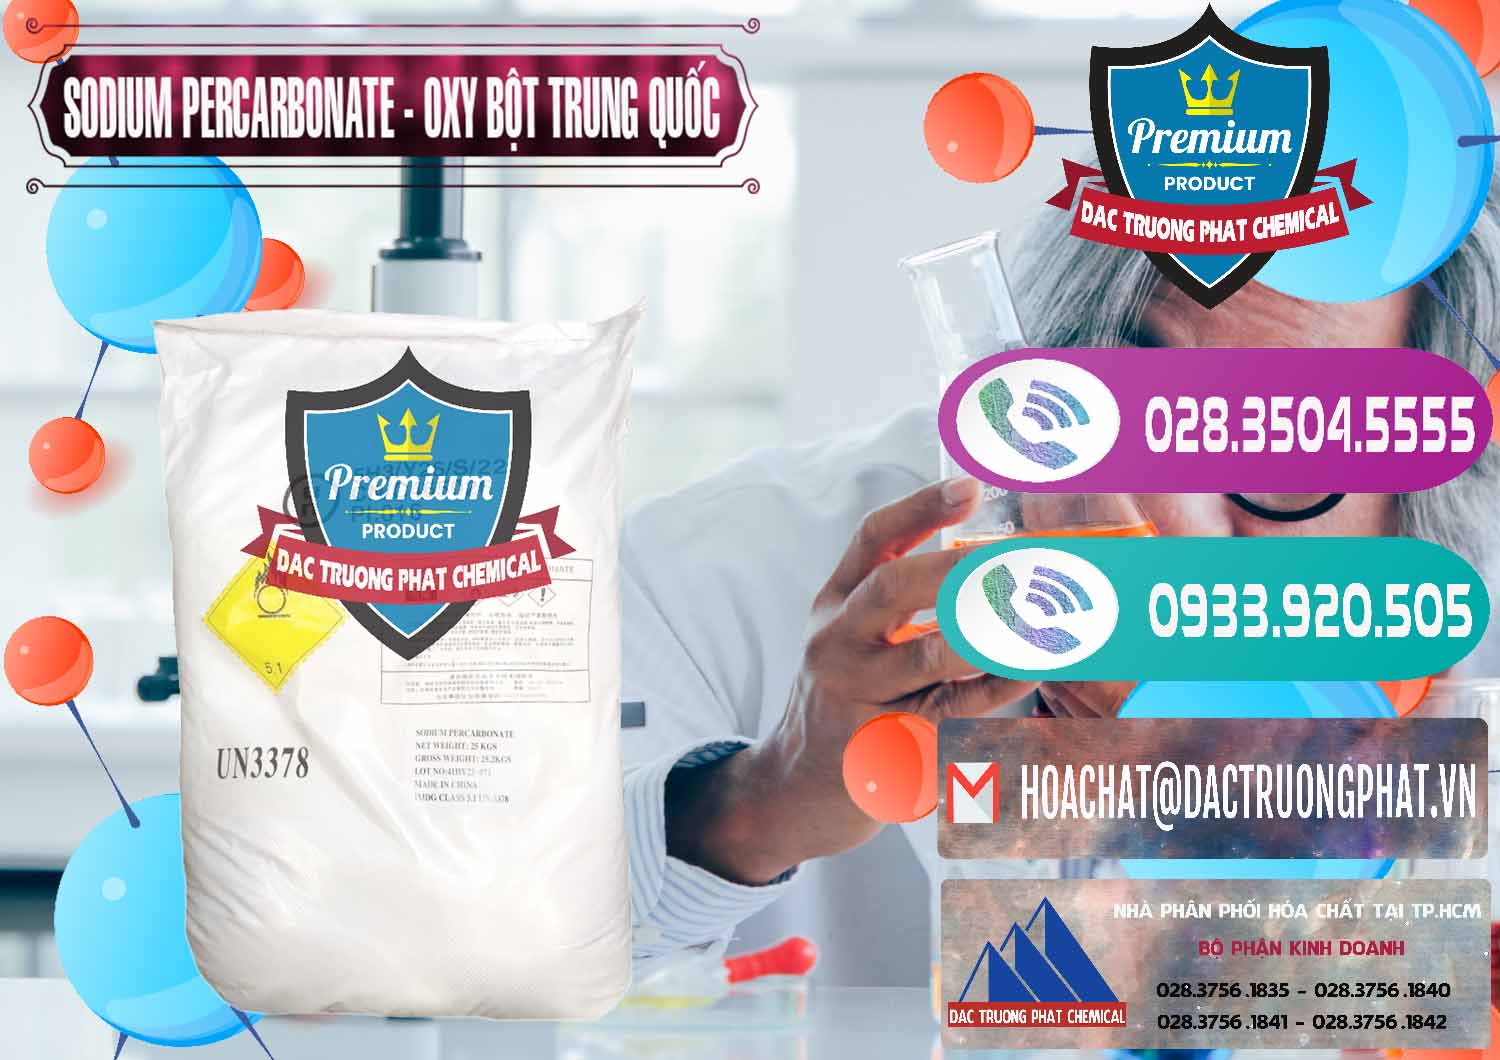 Nơi chuyên cung ứng và bán Sodium Percarbonate Dạng Bột Trung Quốc China - 0390 - Chuyên phân phối _ bán hóa chất tại TP.HCM - hoachatxulynuoc.com